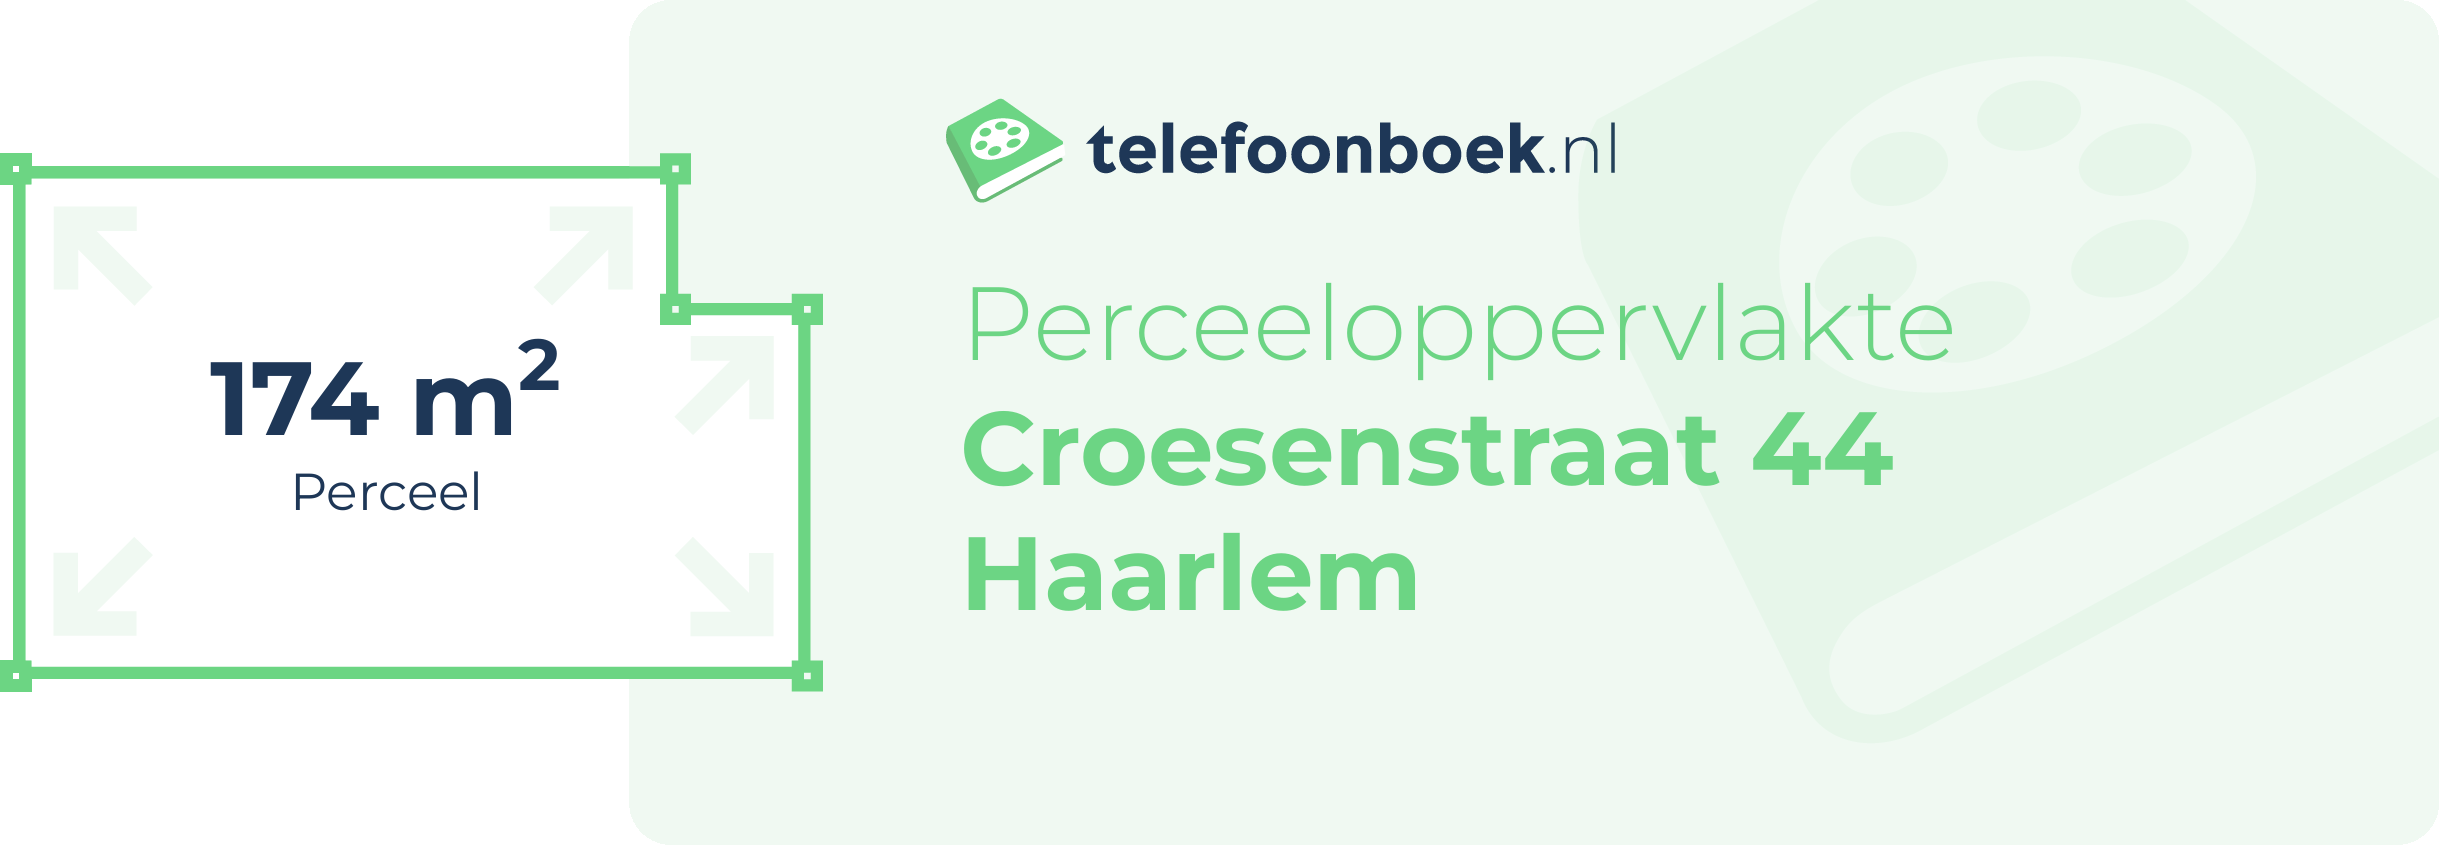 Perceeloppervlakte Croesenstraat 44 Haarlem